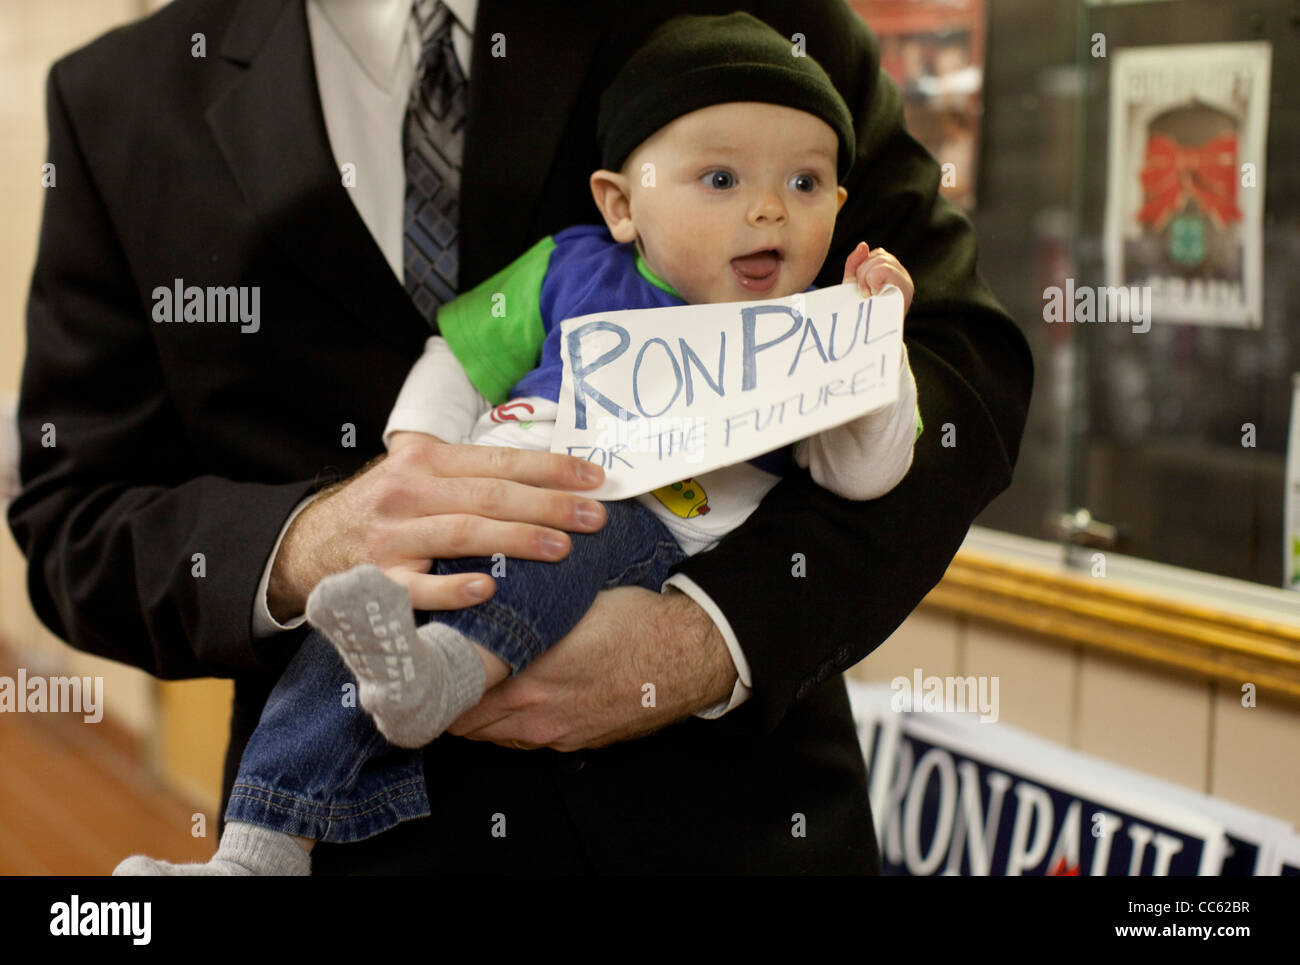 Un jeune partisan du candidat présidentiel républicain Ron Paul attend d'accueillir le candidat dans un arrêt de la campagne dans l'Iowa Le Mars Banque D'Images